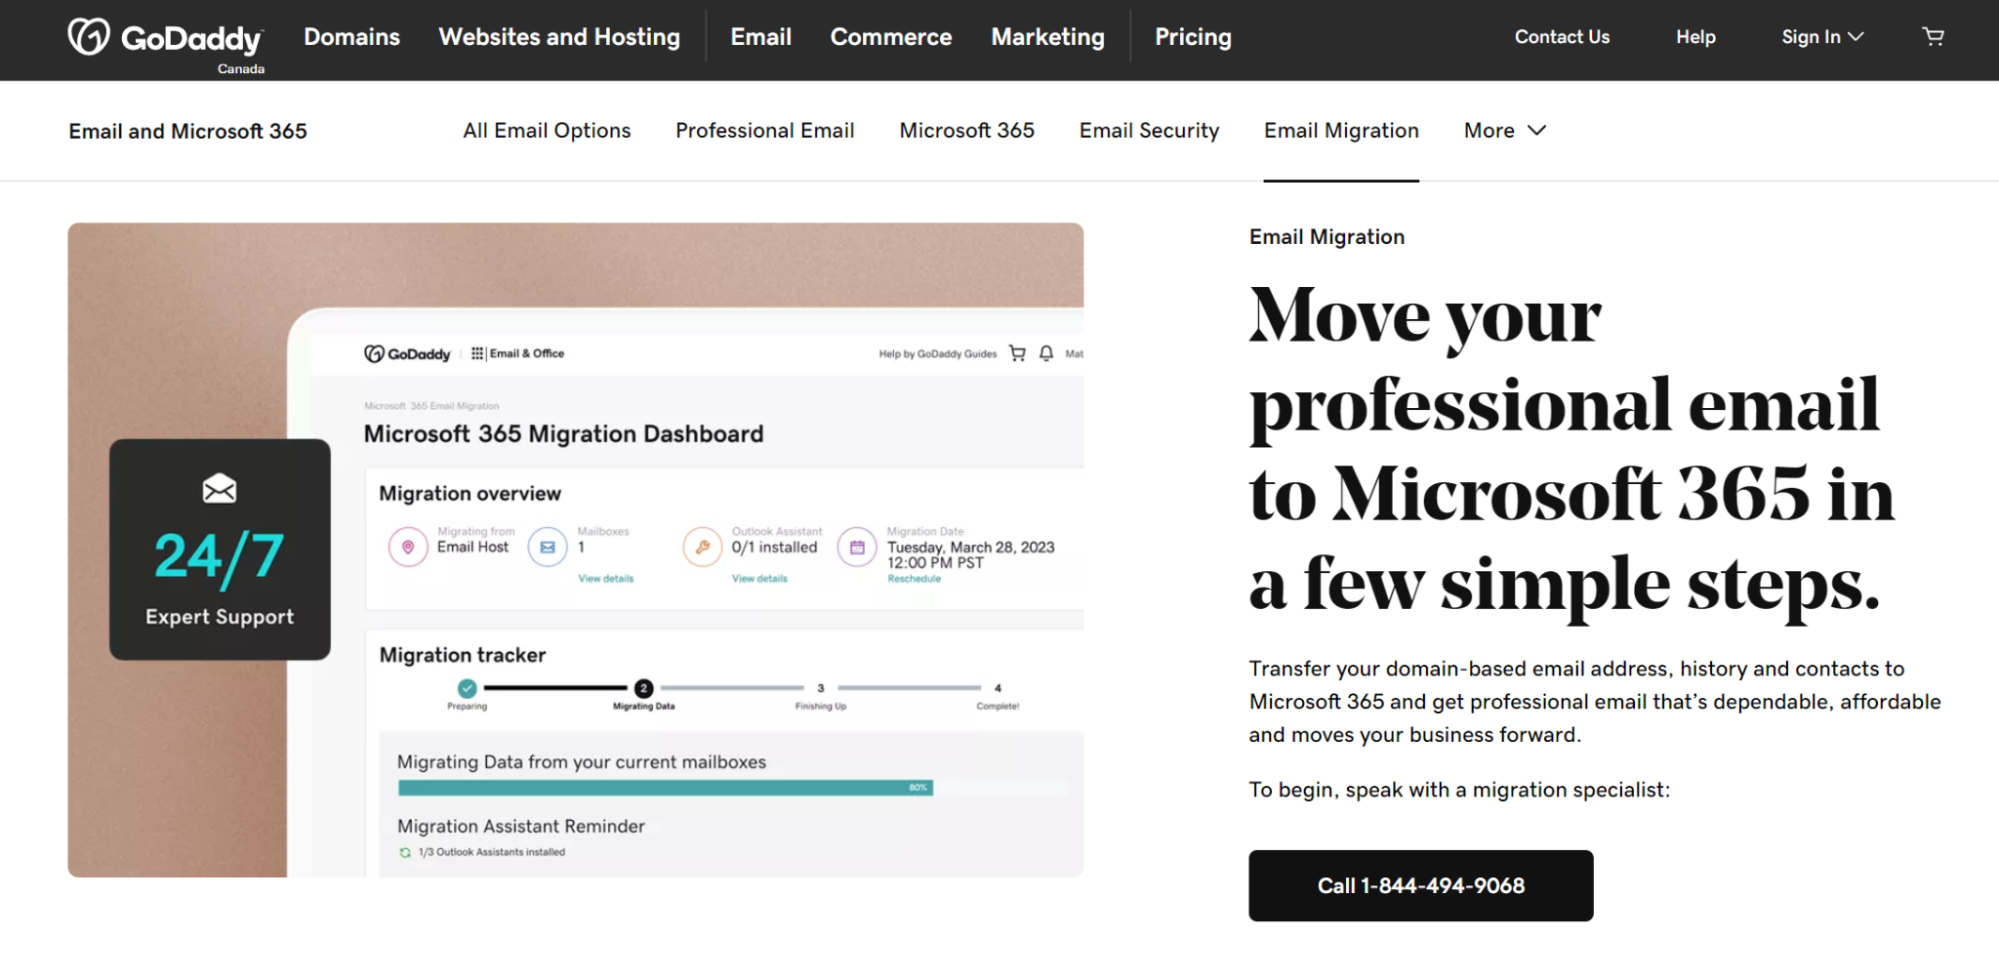 Página inicial de migração para clientes que desejam migrar do GoDaddy para o Microsoft 365